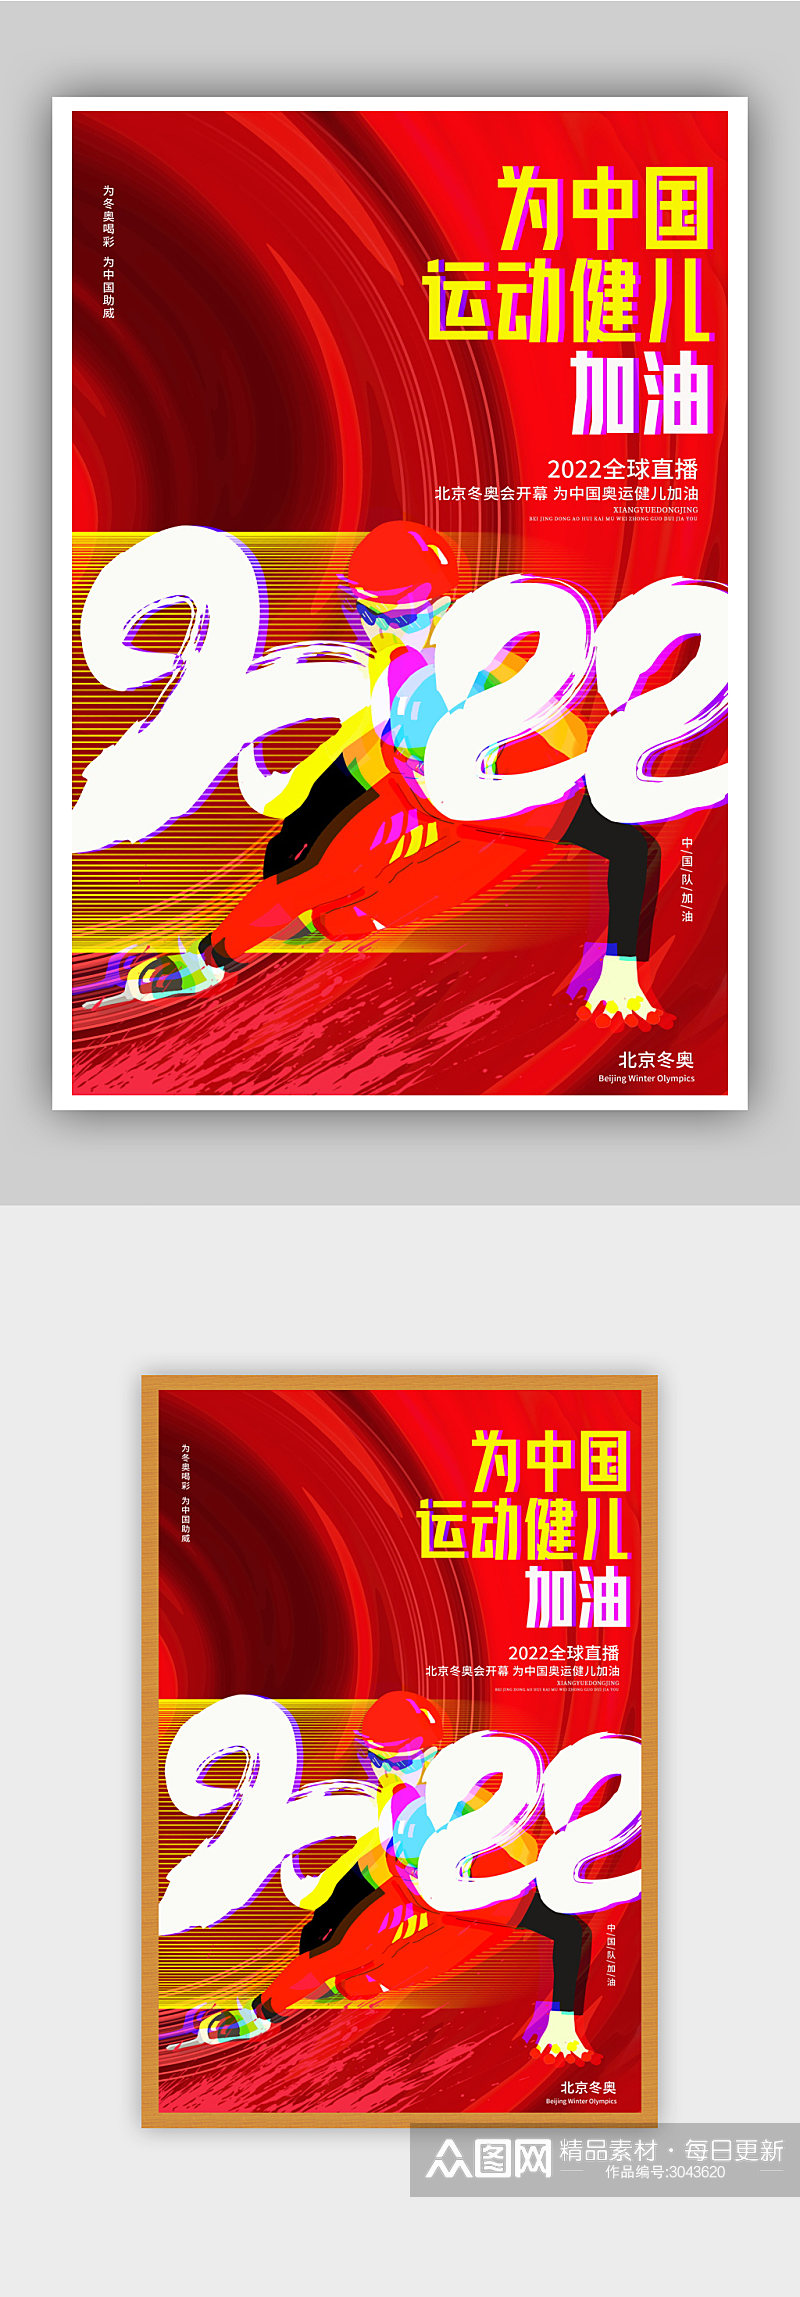 为中国运动健儿加油全民运动会宣传海报素材